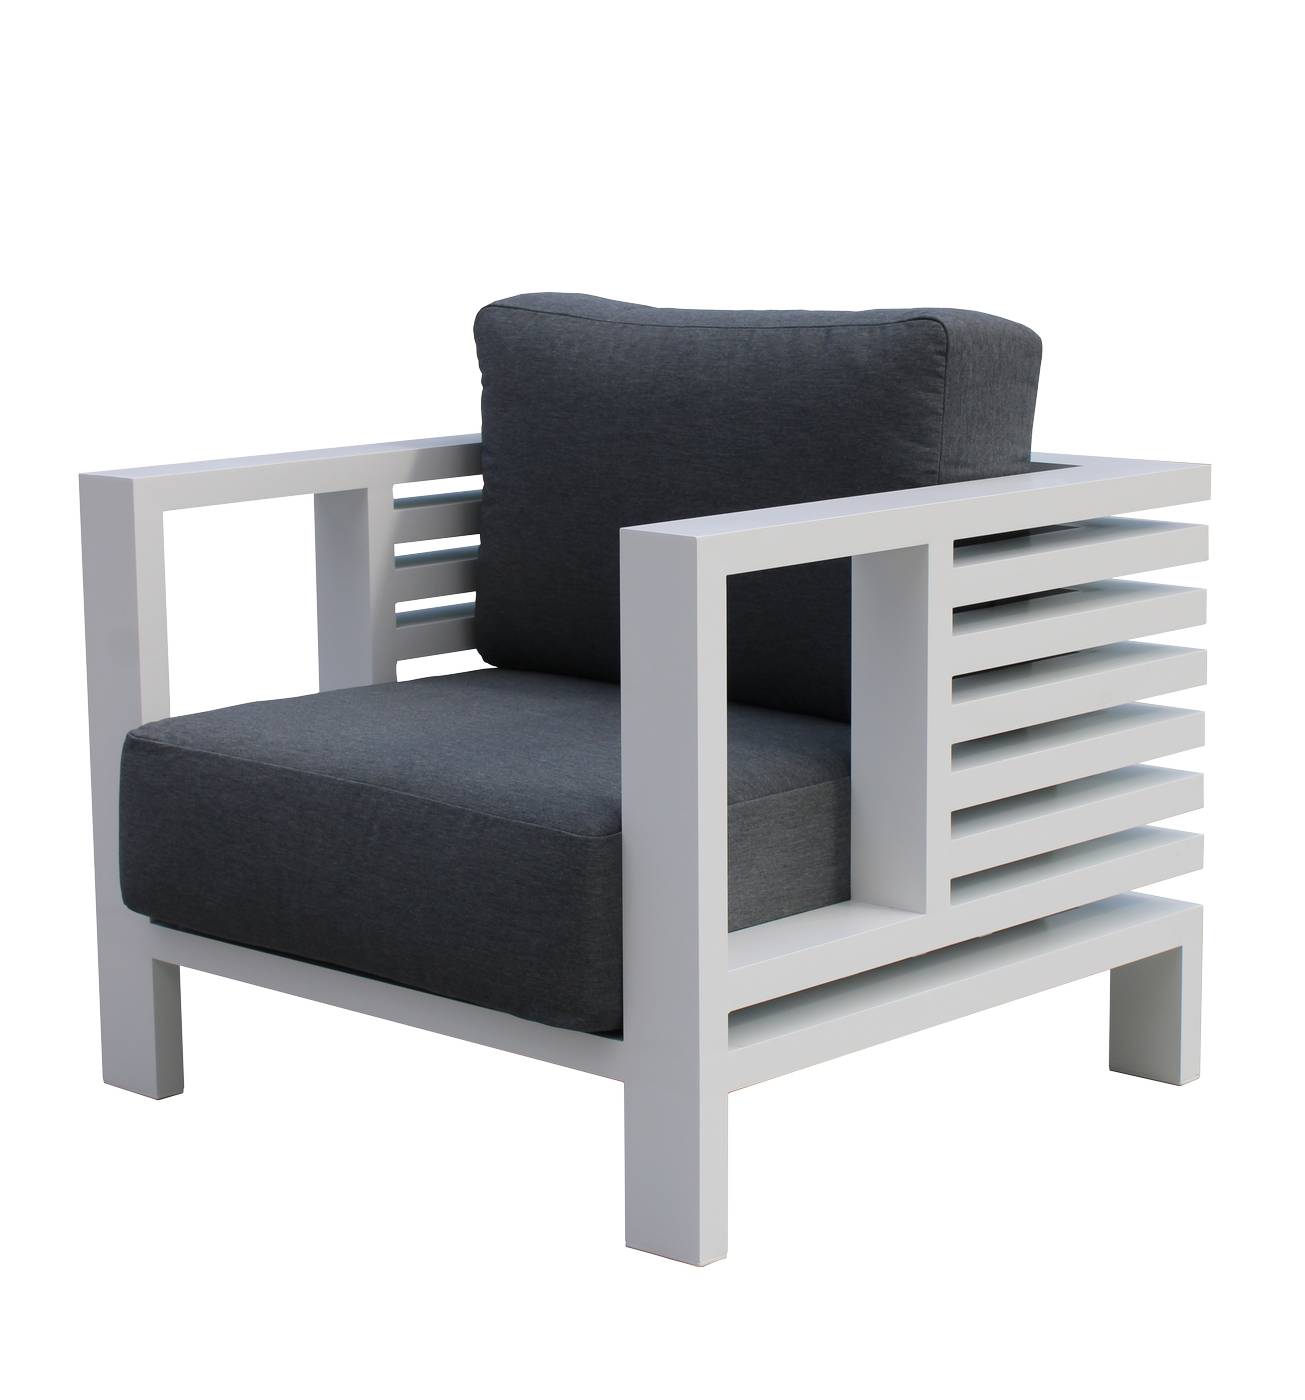 Set Aluminio Caledonia-8 - Conjunto super lujo de aluminio: sofá de 3 plazas + 2 sillones + 1 mesa de centro. Colores blanco, antracita, marrón, champagne o plata.